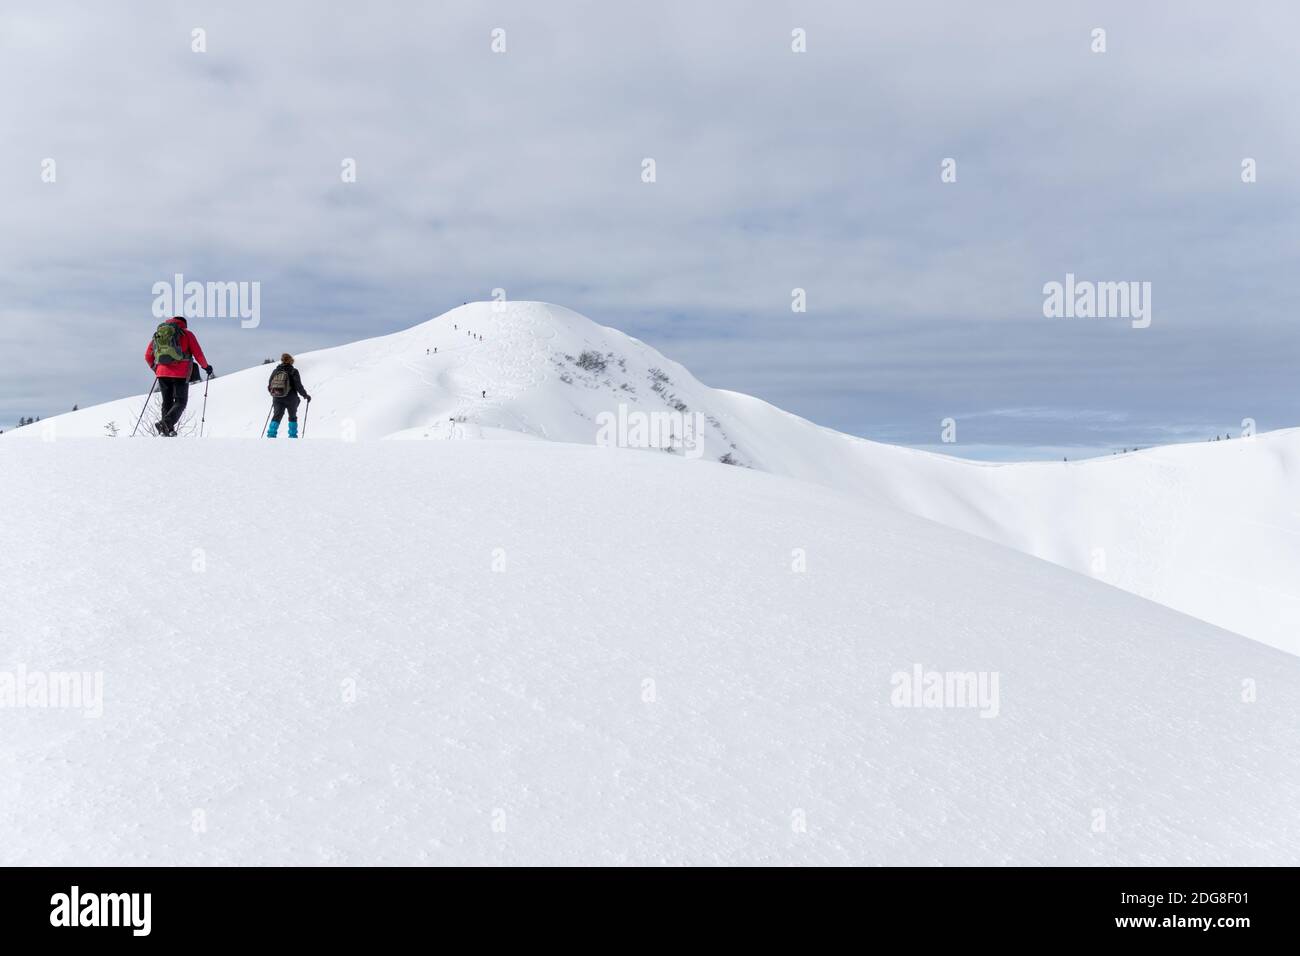 Le couple senior fait de la randonnée en raquettes dans les montagnes alpines d'hiver. Allgau, Bavière, Allemagne. Banque D'Images